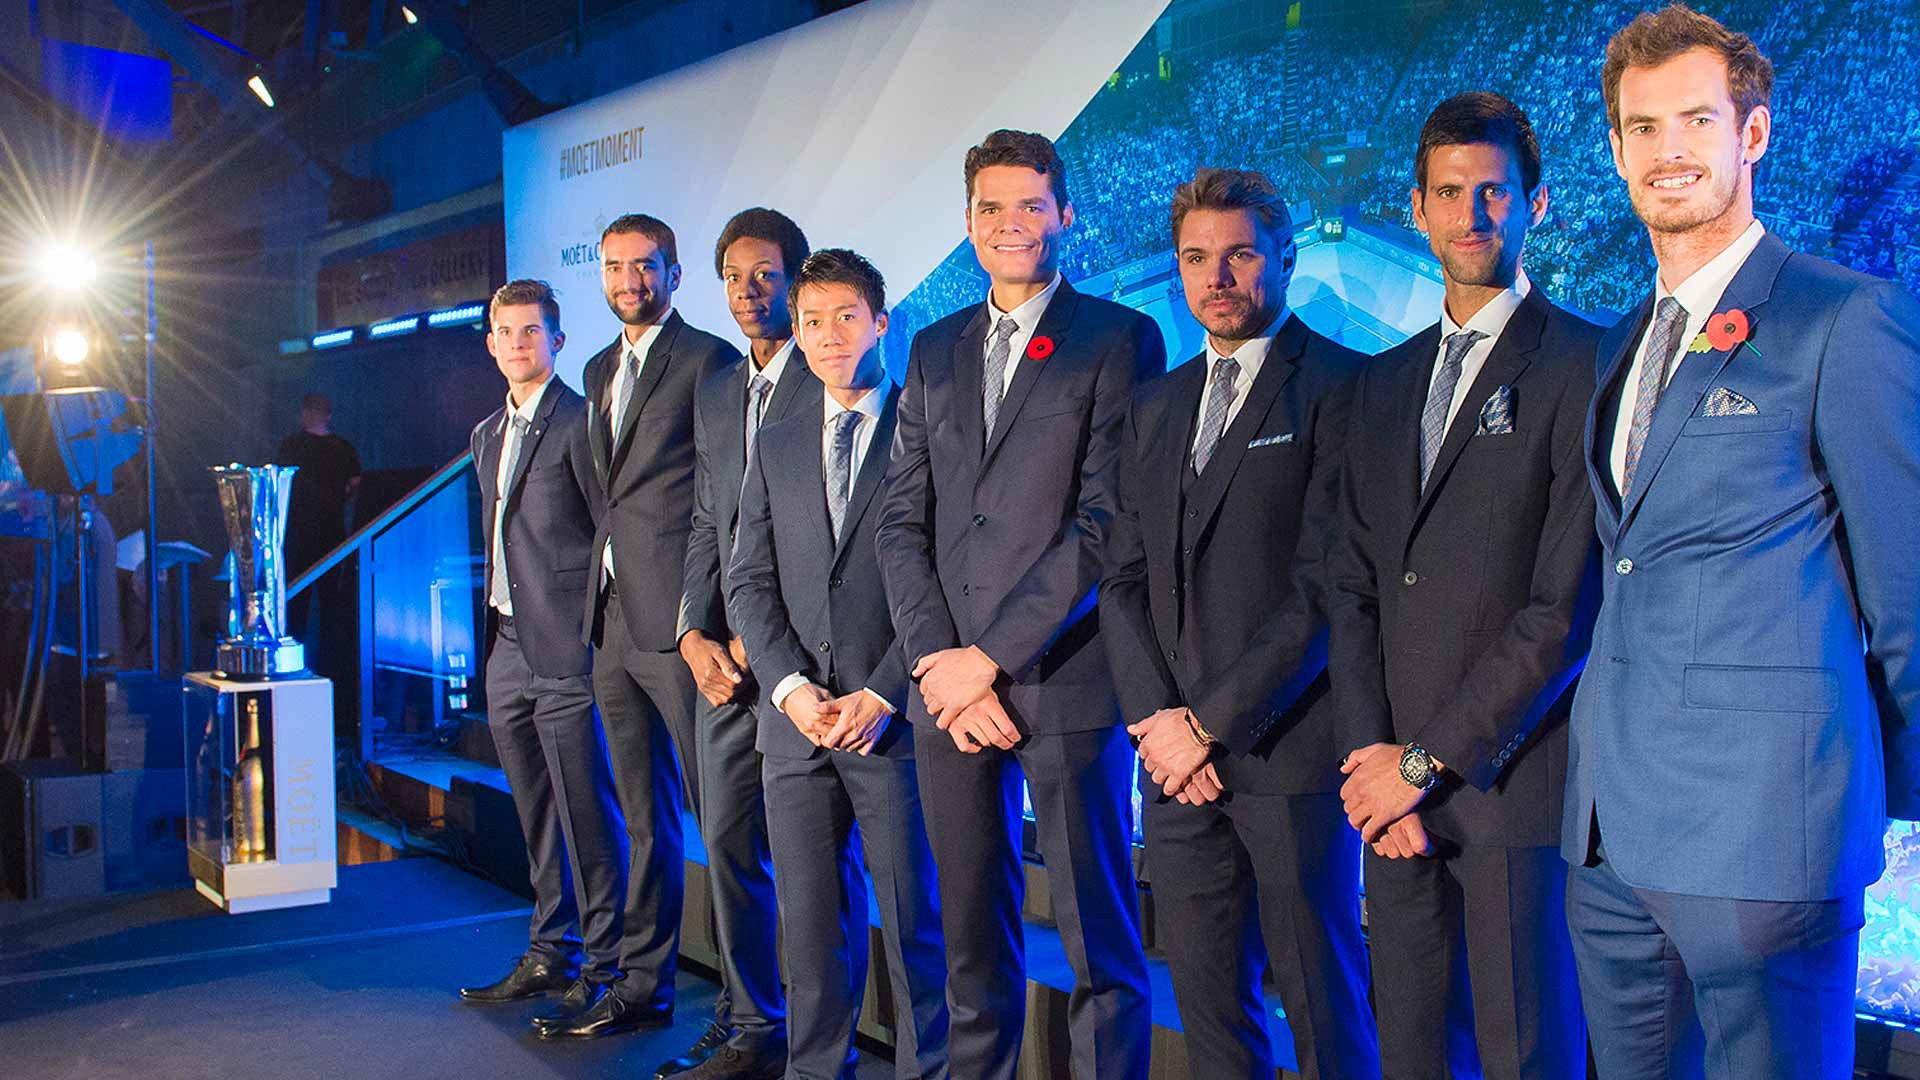 8 tay vợt tham dự ATP World Tour Finals năm nay